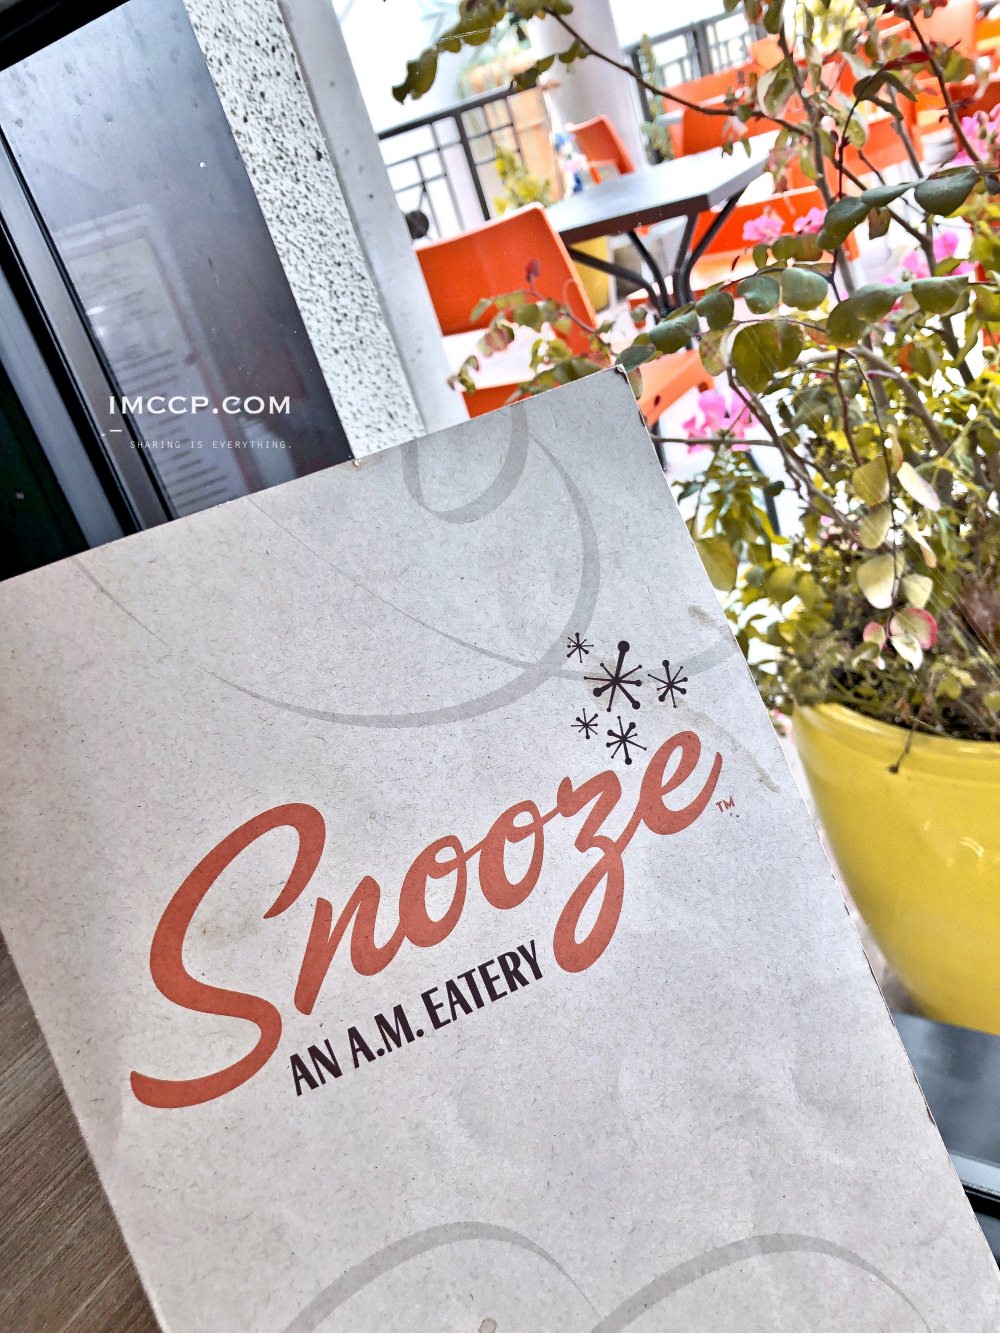 聖地牙哥美式早午餐Snooze, an A.M. Eatery。全美連鎖人氣Brunch排隊名店